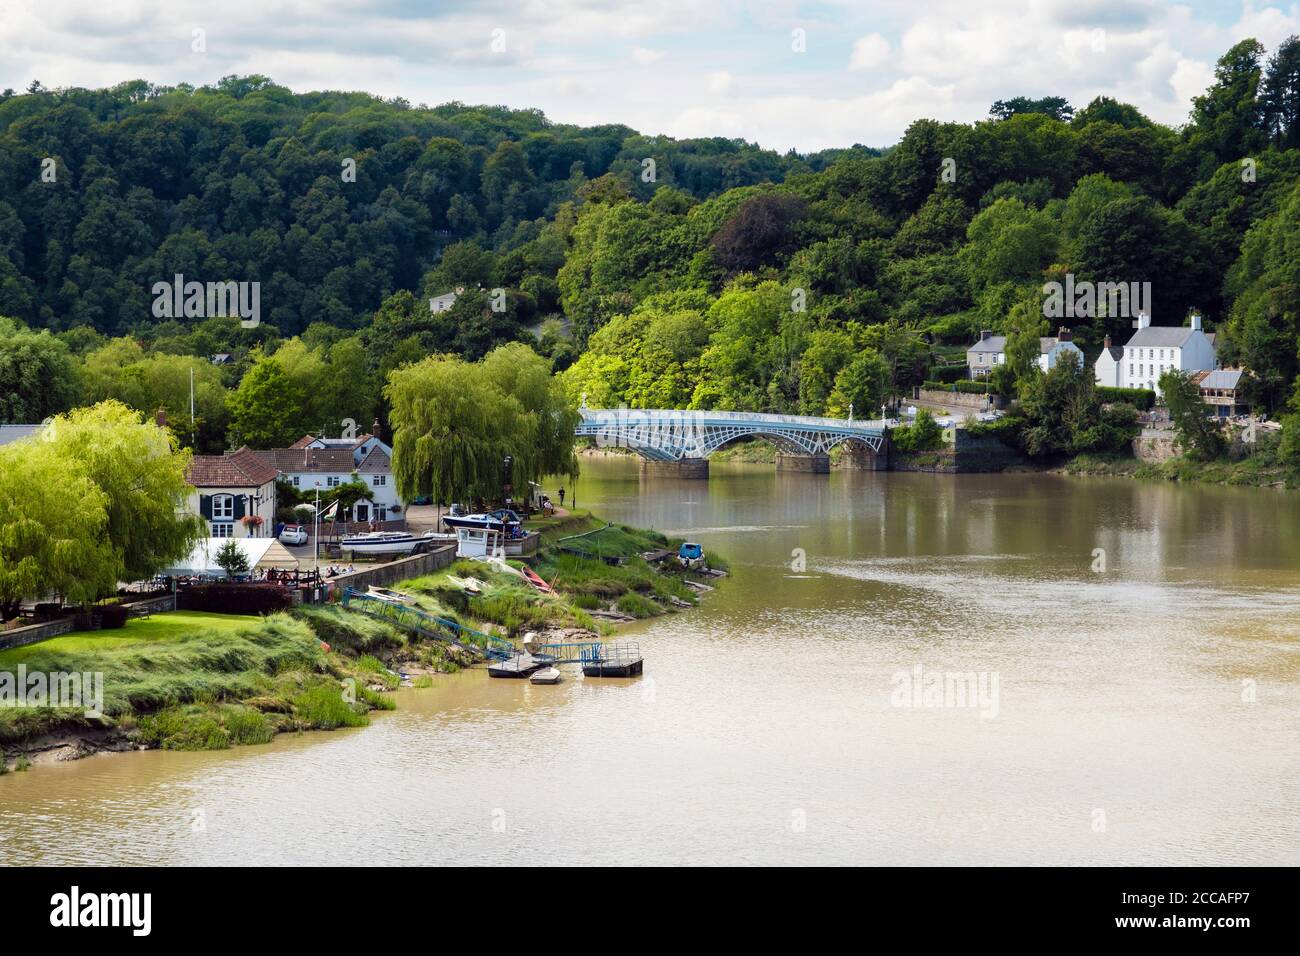 Vista a lo largo del río Wye a Riverside Park y el viejo puente Wye en la frontera entre las naciones inglesas y galesas. Chepstow, Monmouthshire, Gales, Reino Unido, Gran Bretaña Foto de stock